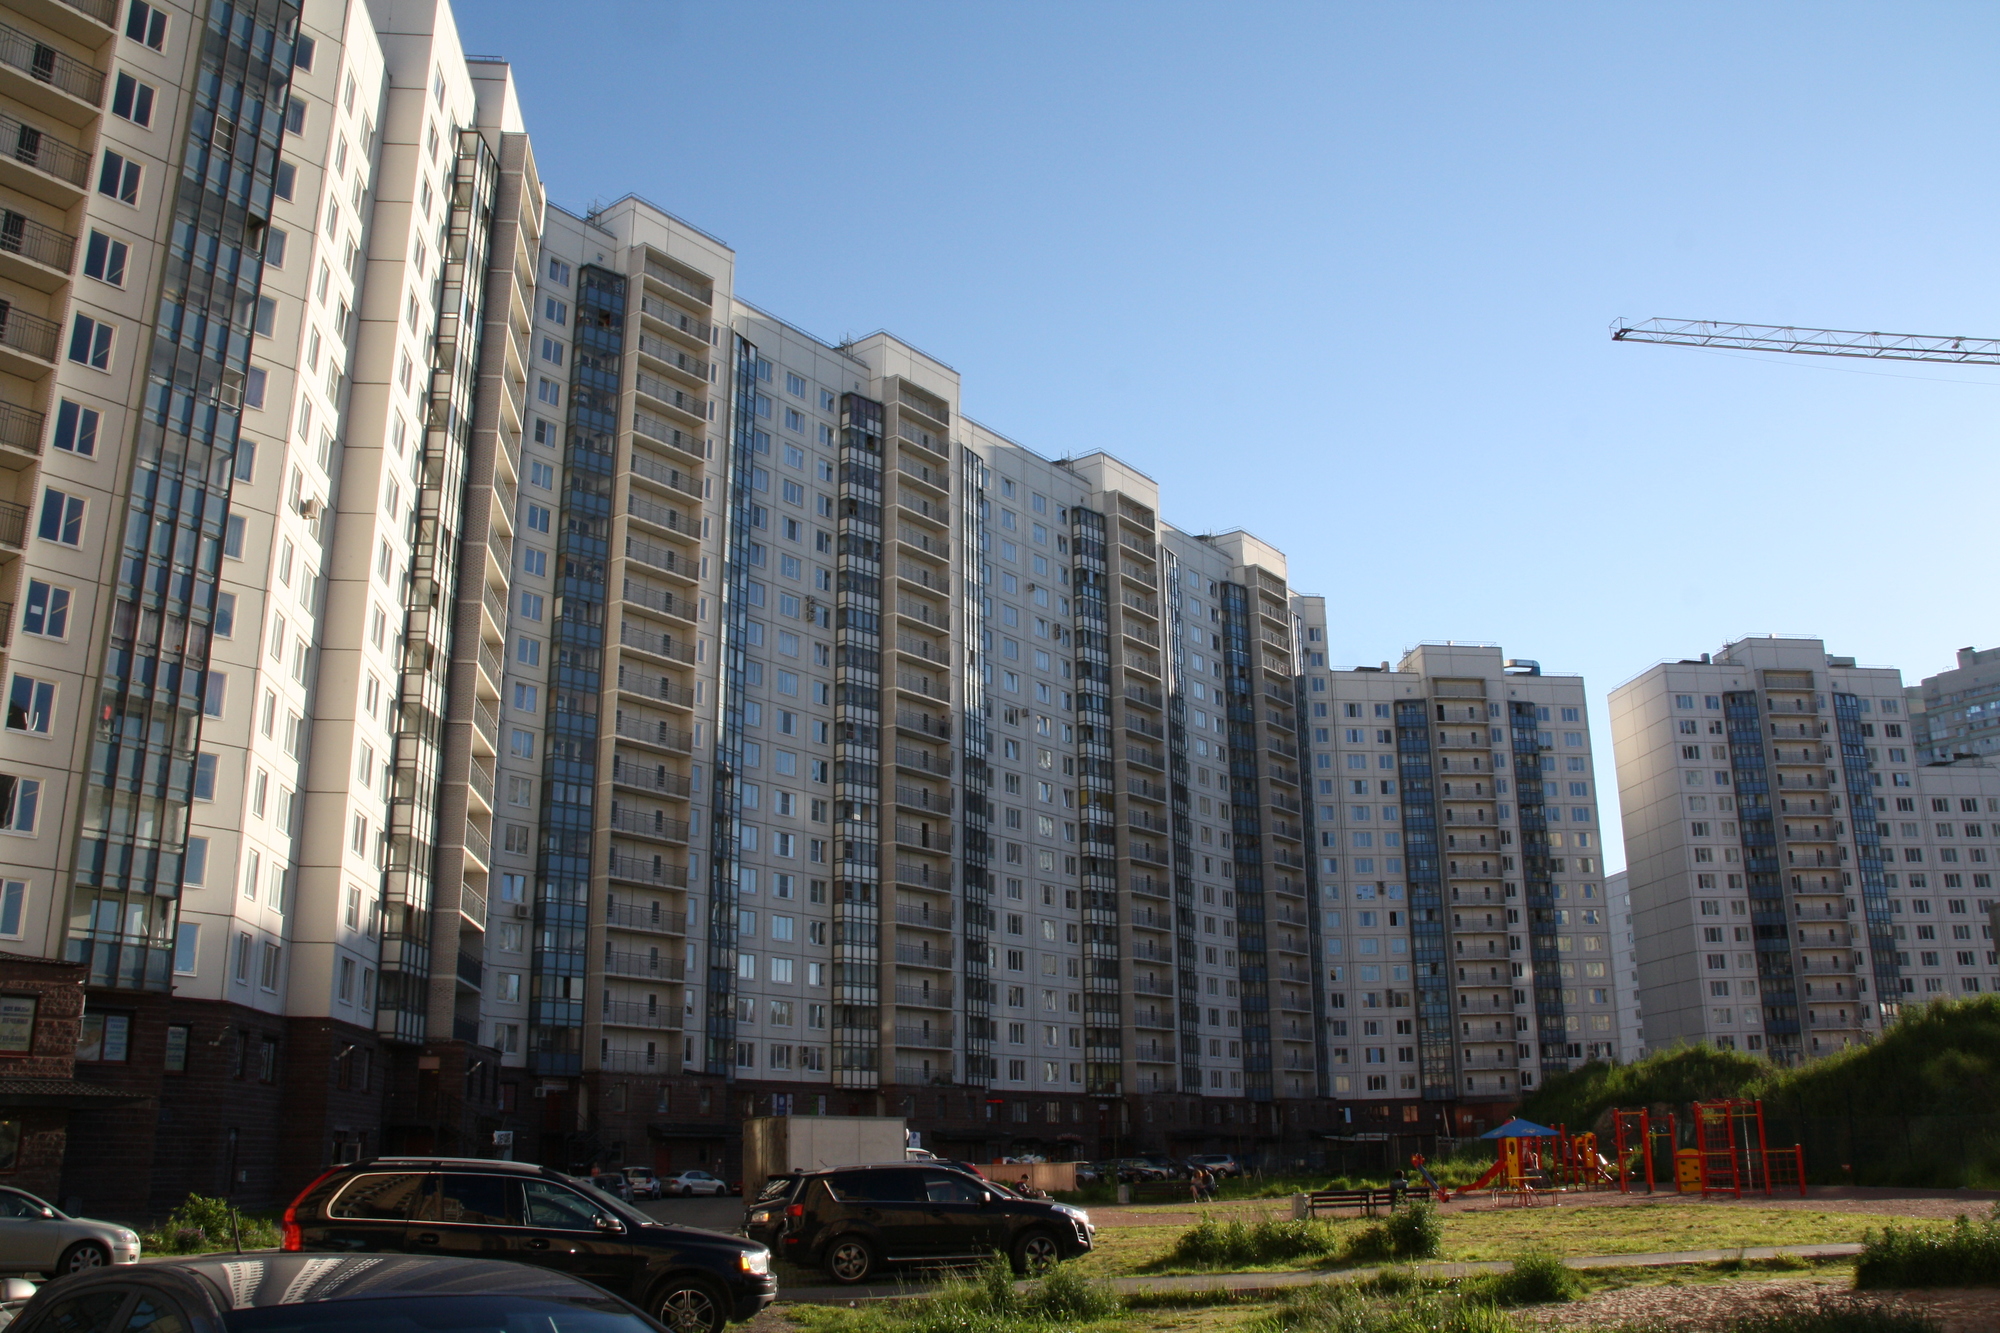 Будущее ипотечного кредитования обсудят в Москве 29 марта